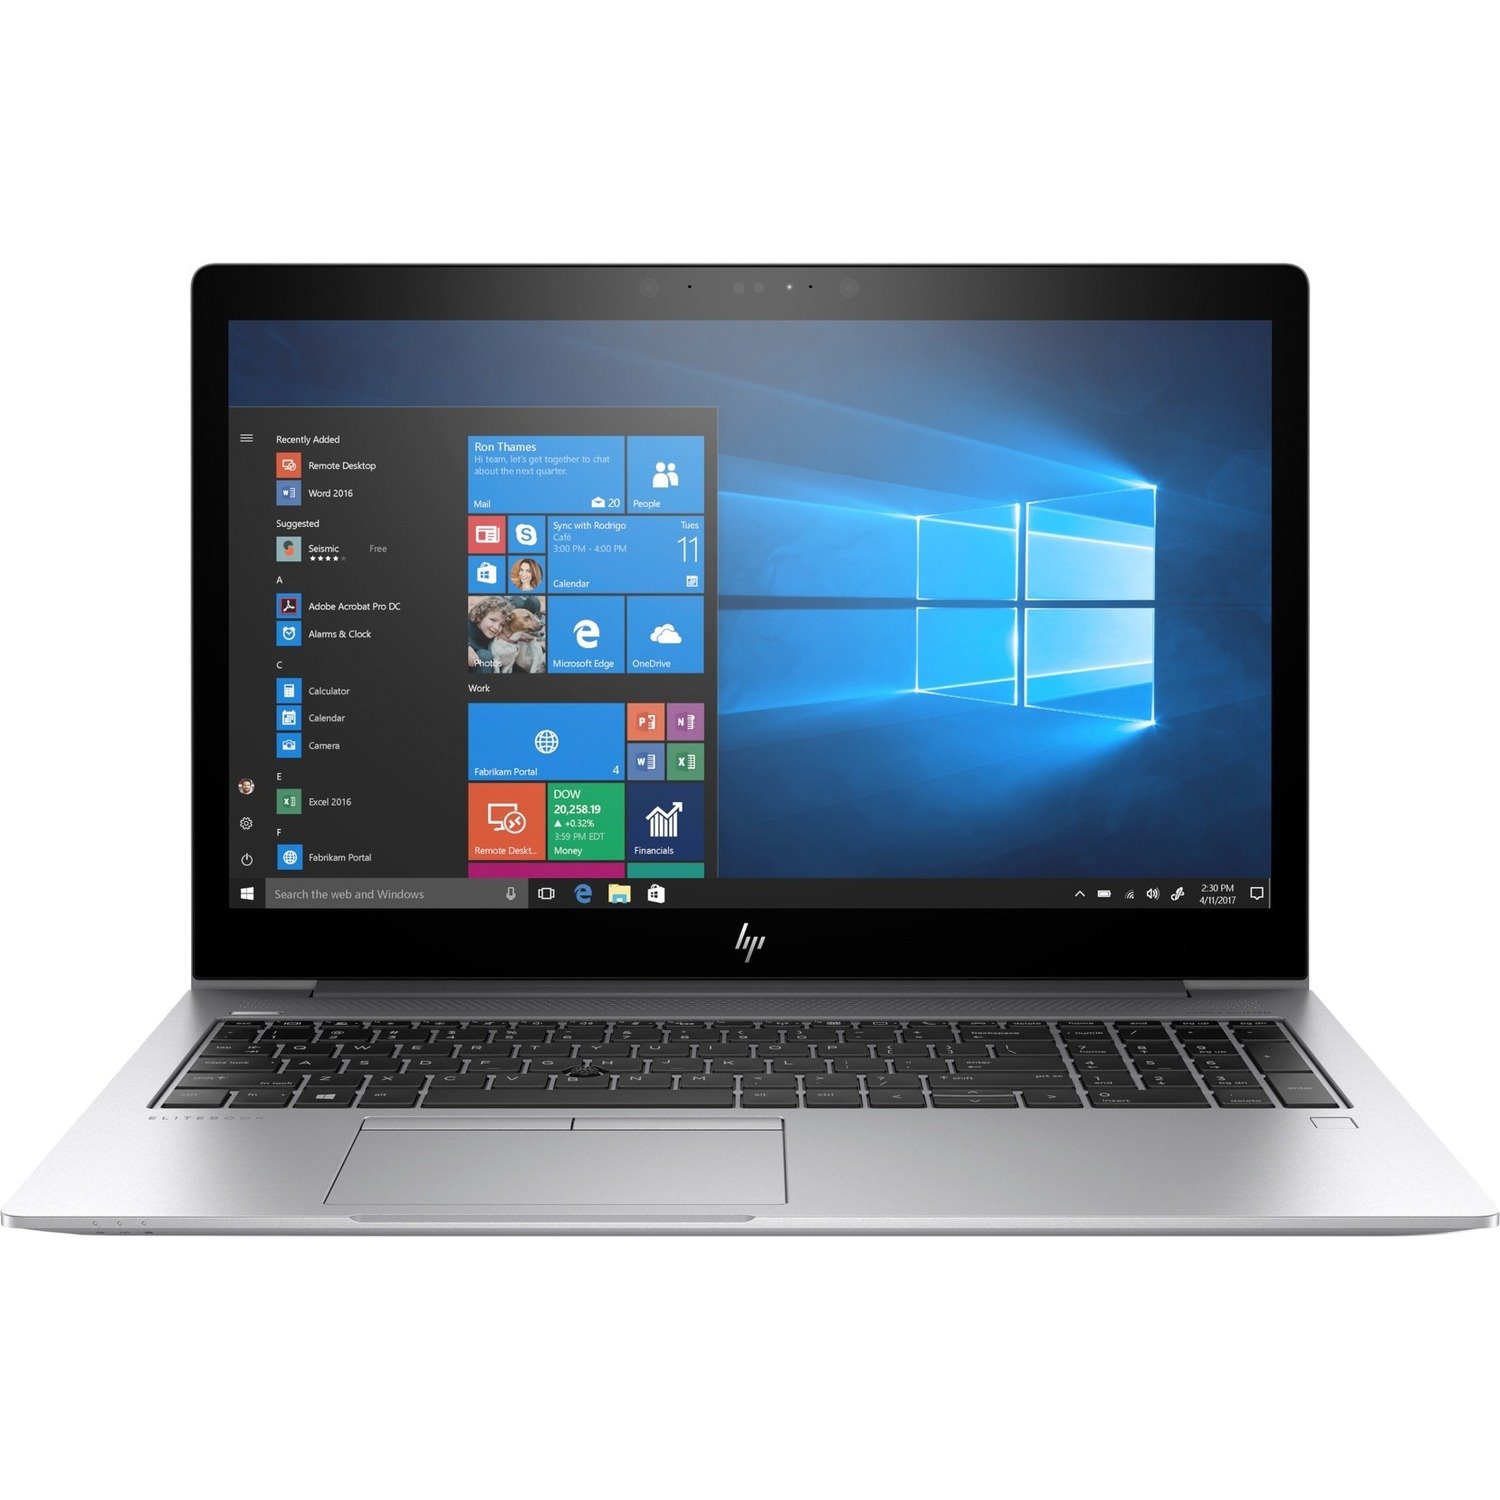 HP EliteBook 755 G5 15.6" Notebook - 1920 x 1080 - AMD Ryzen 7 2700U Quad-core (4 Core) 2.20 GHz - 8 GB Total RAM - 256 GB SSD